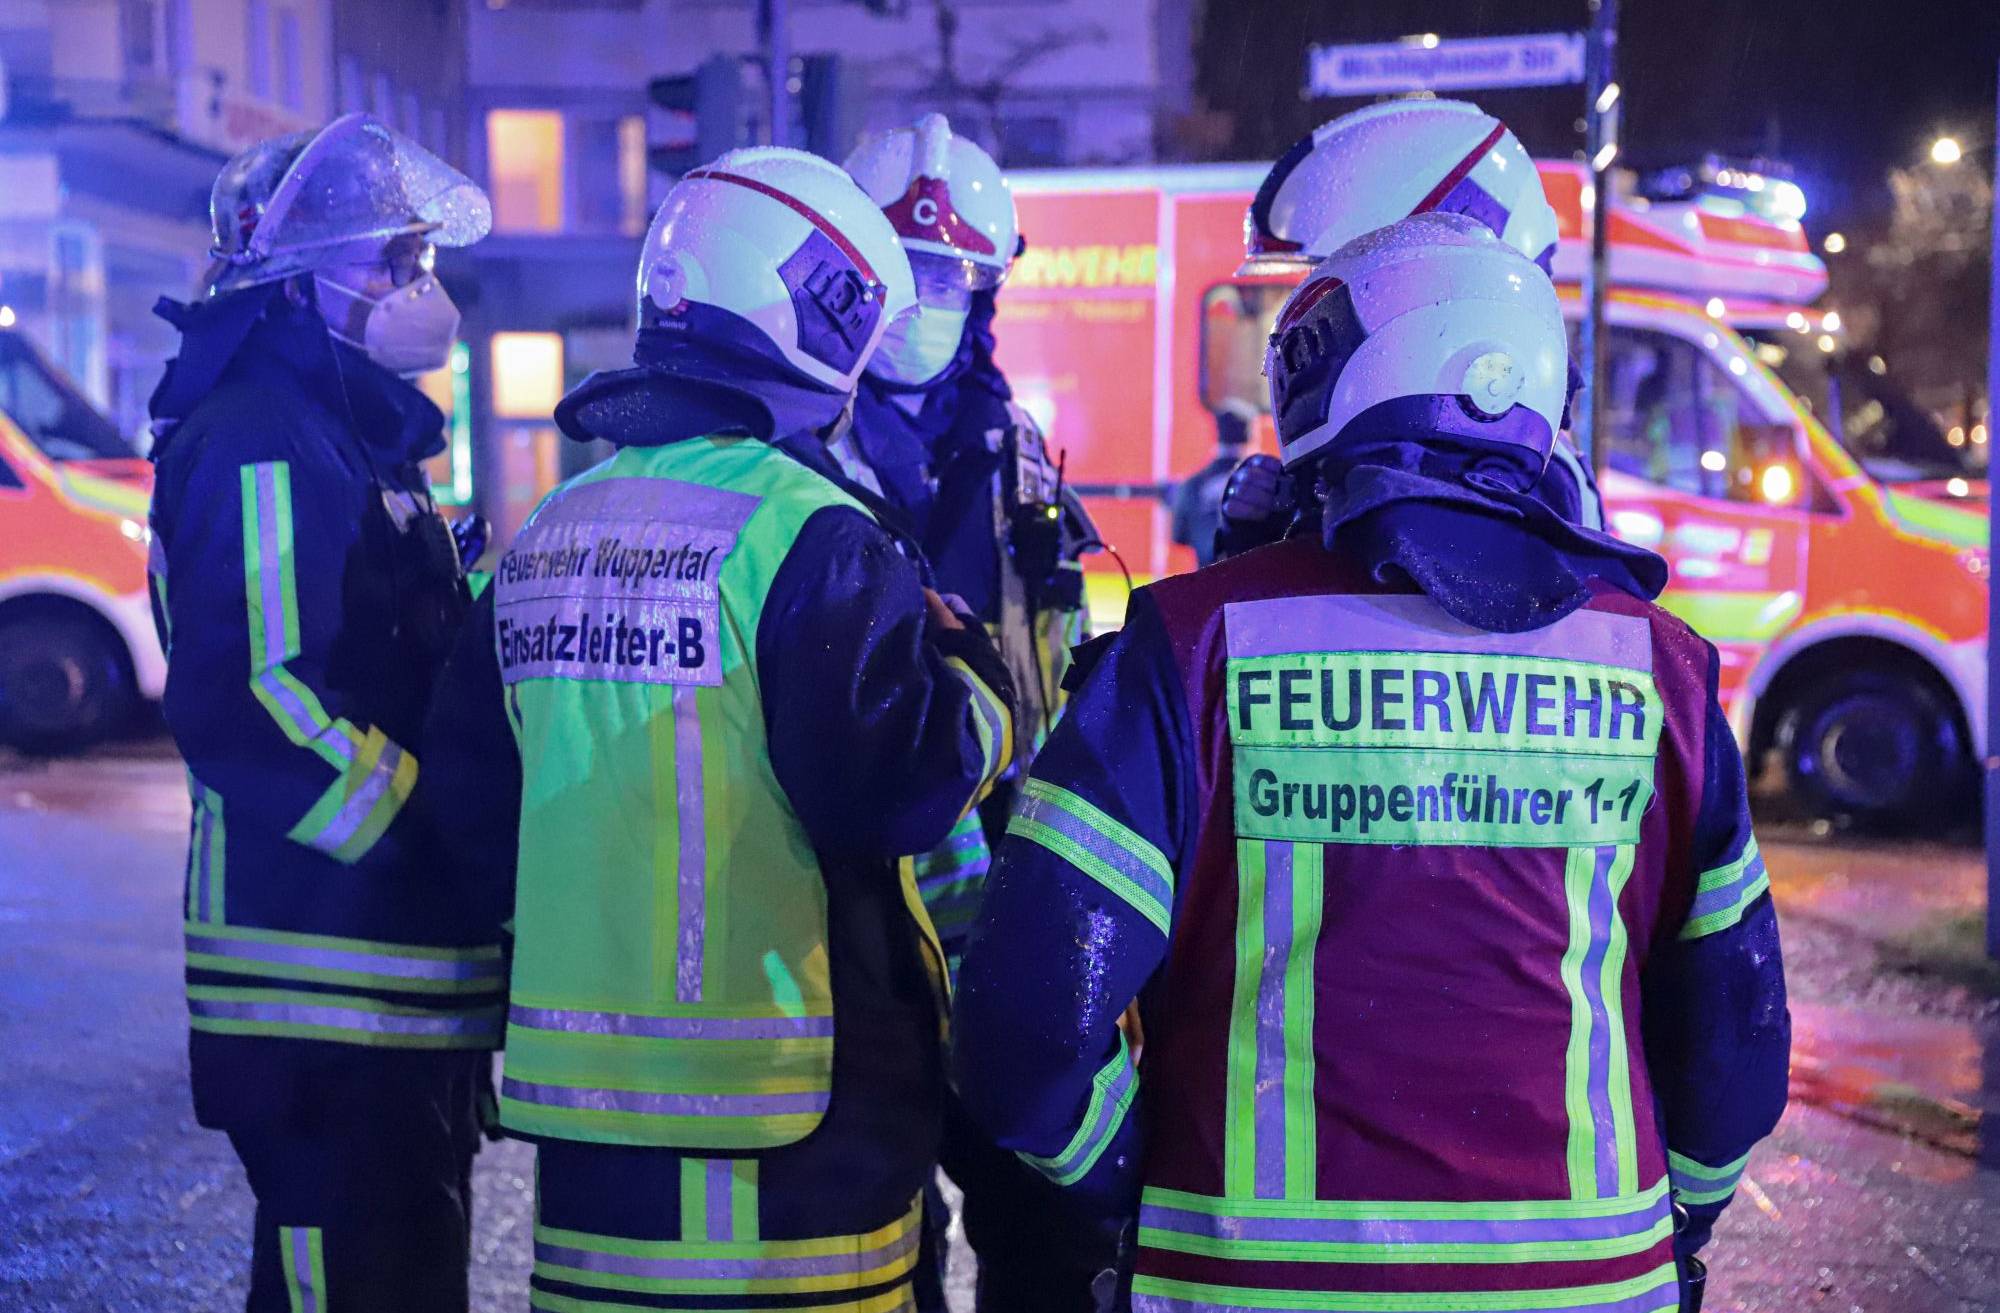 Feuerwehr-Einsatz in Wuppertaler Shisha-Bar